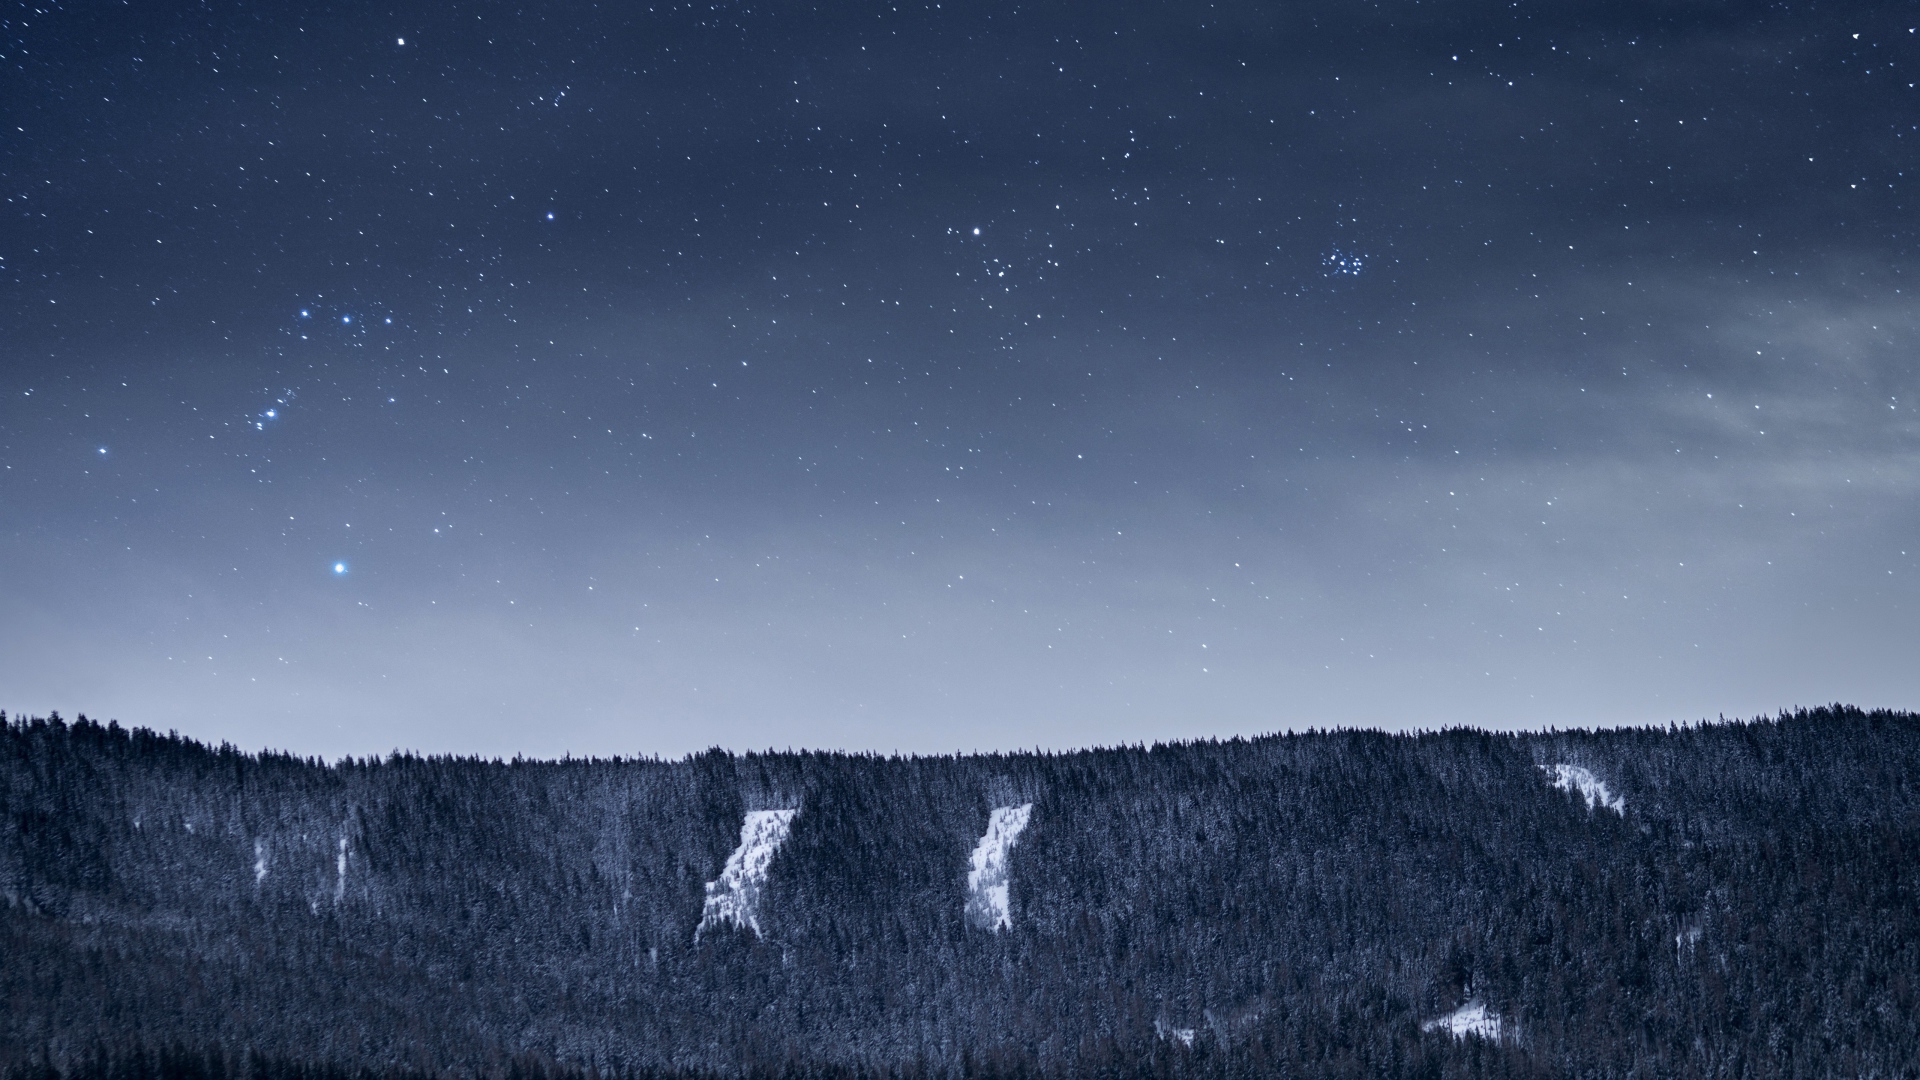 Вид на ночное небо со звездами над лесом